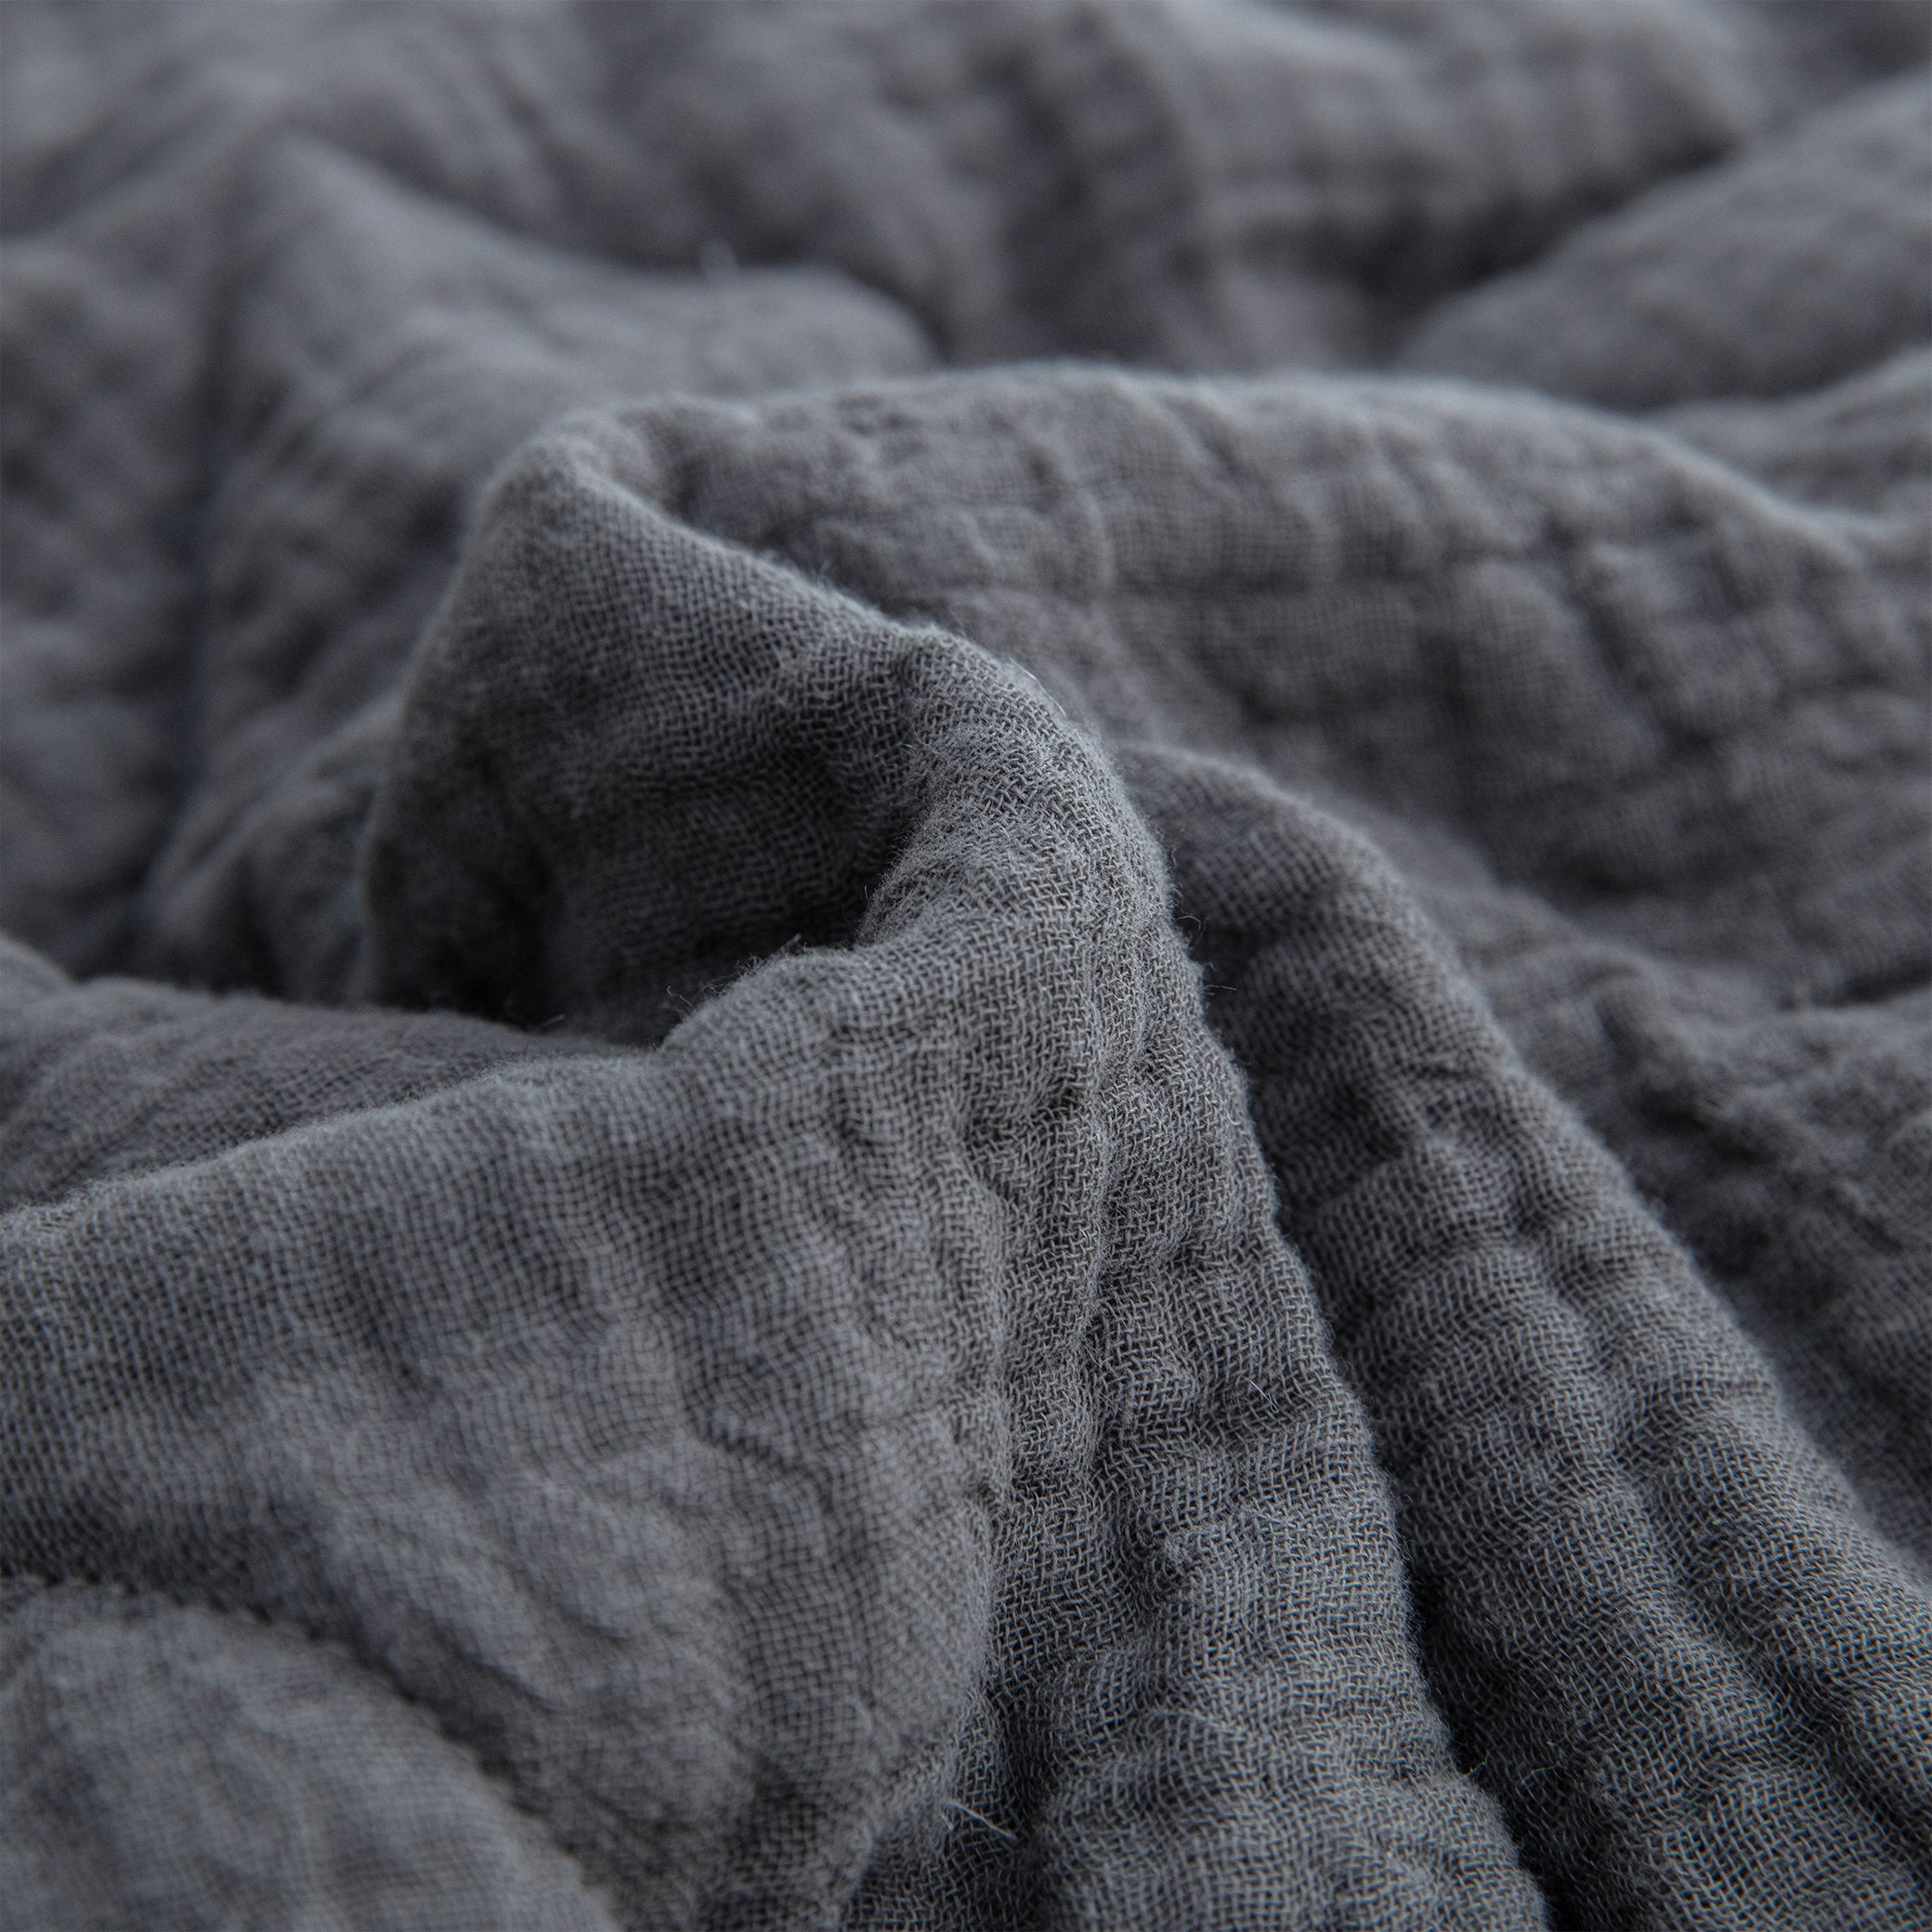 LUXE Steel Grey Comforter